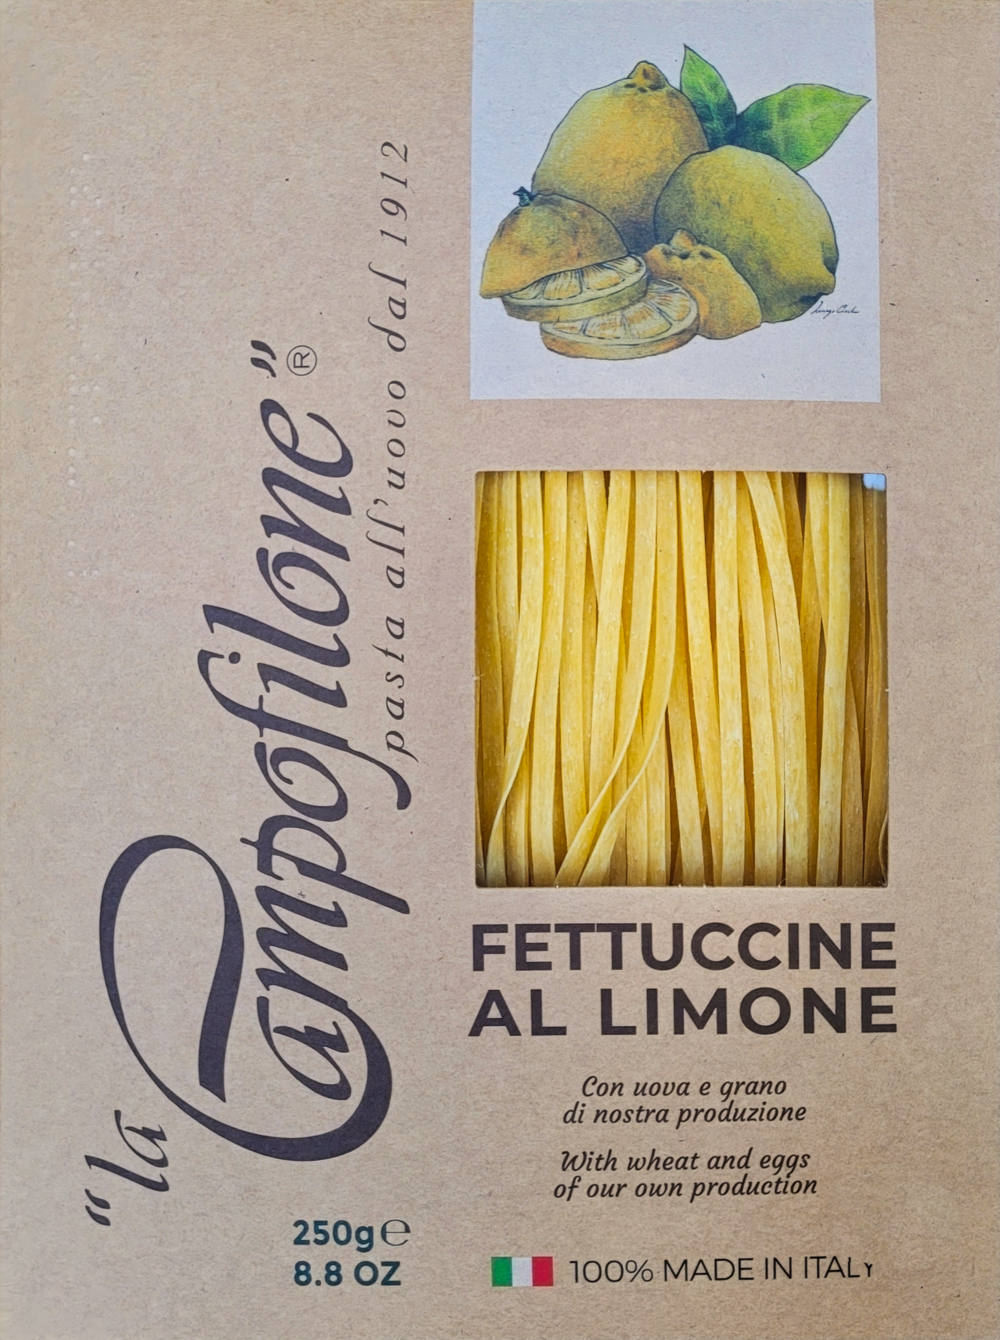 CAMPOFILONE - Fettuccine mit Zitrone 250g